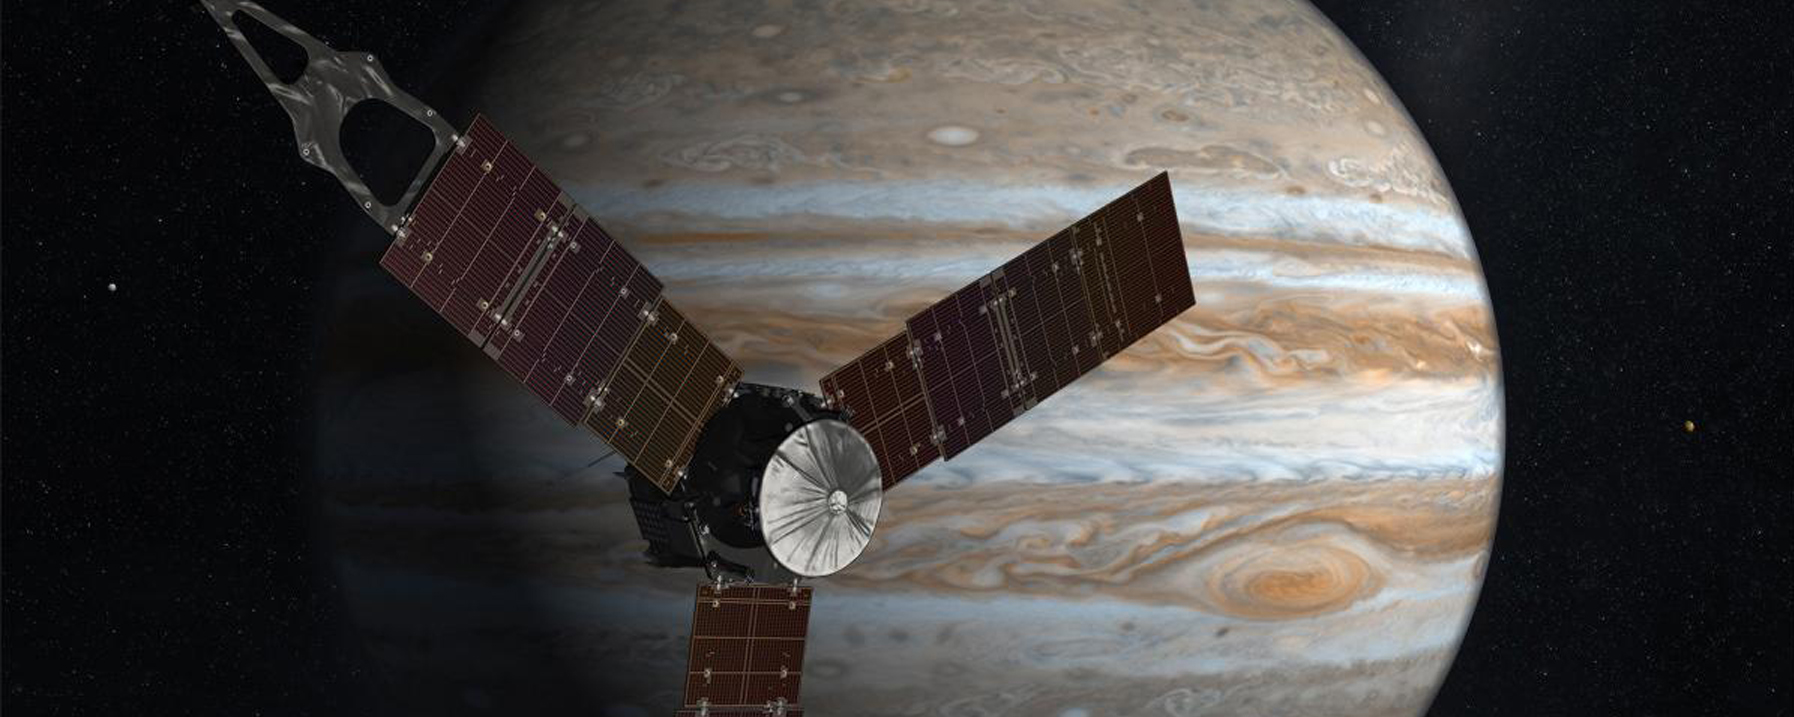 NASA-sonde Juno veilig aangekomen bij Jupiter